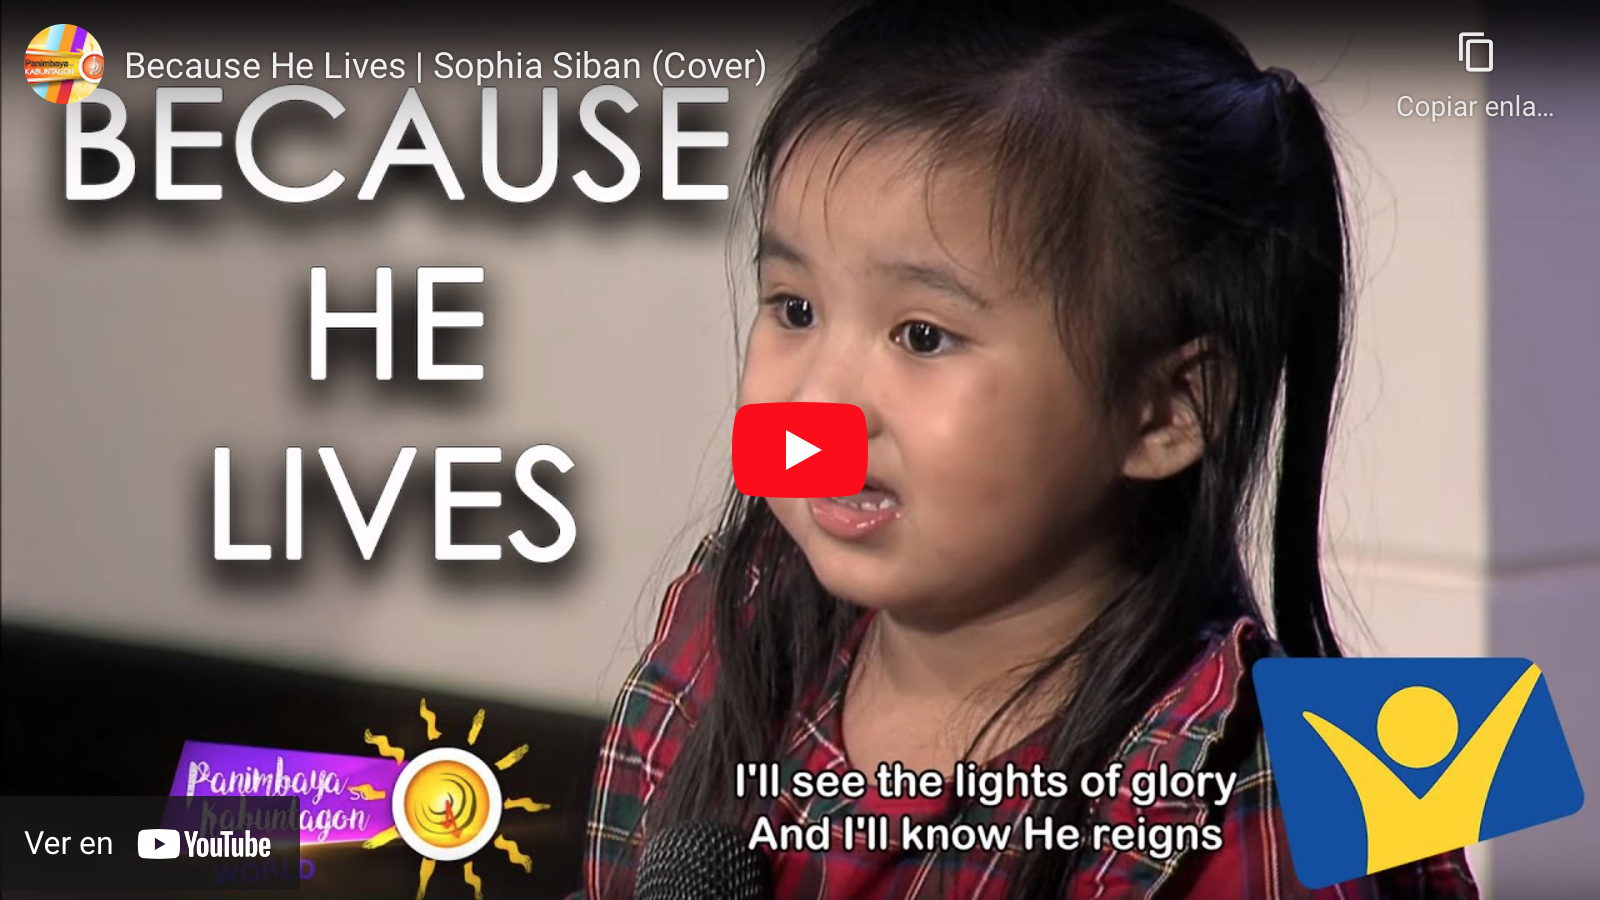 Adorable niña de dos años canta Porque Él vive